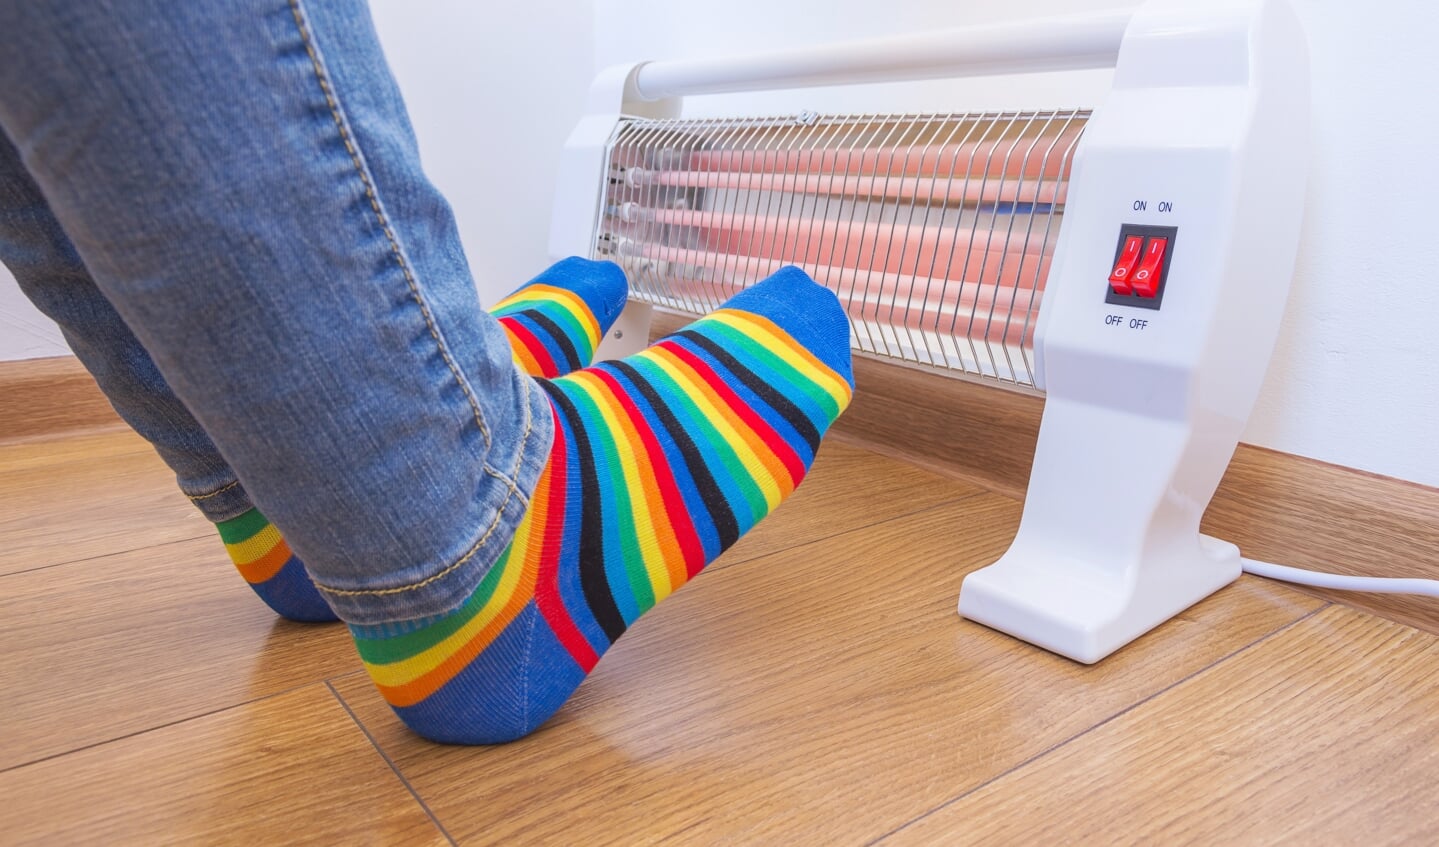 Het lichaam verliest relatief veel hitte via de voeten. Infrarood-verwarming onder het bureau en een paar goede sokken helpt tegen kou.